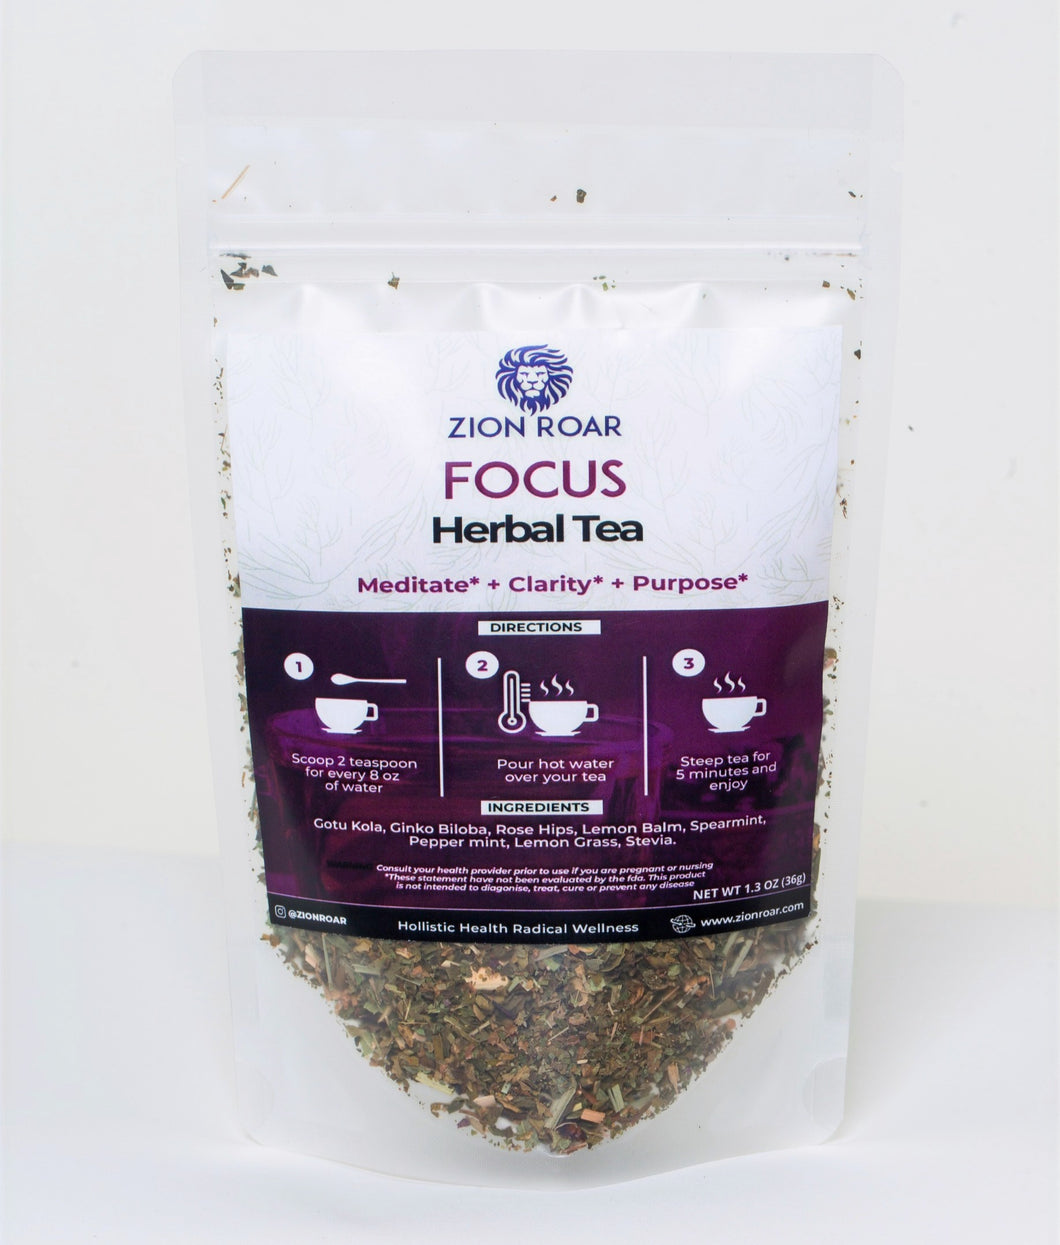 Focus Herbal Tea